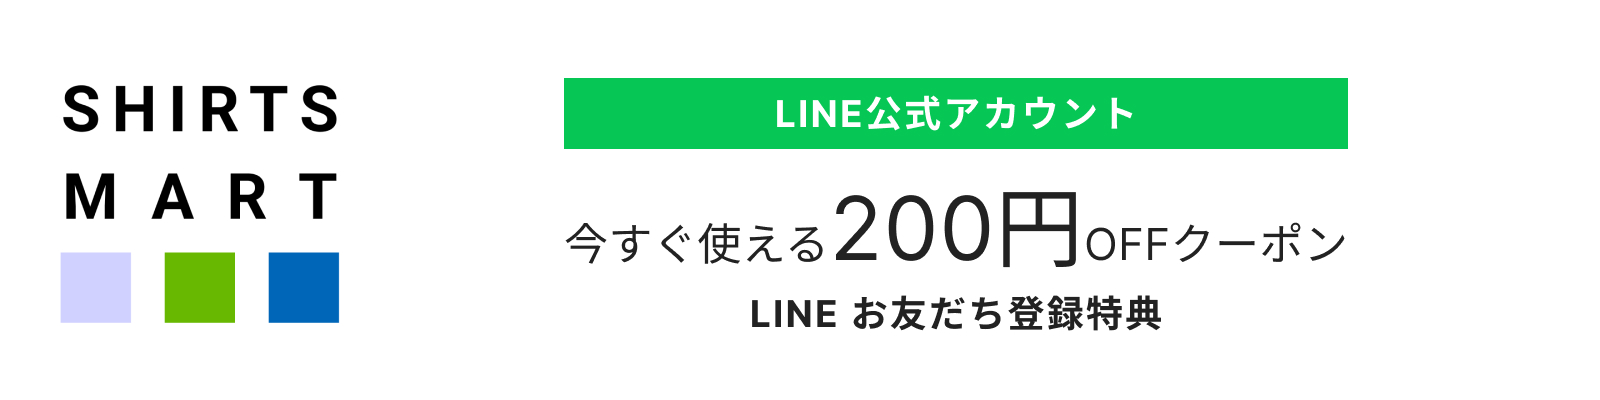 LINEクーポン200円オフ